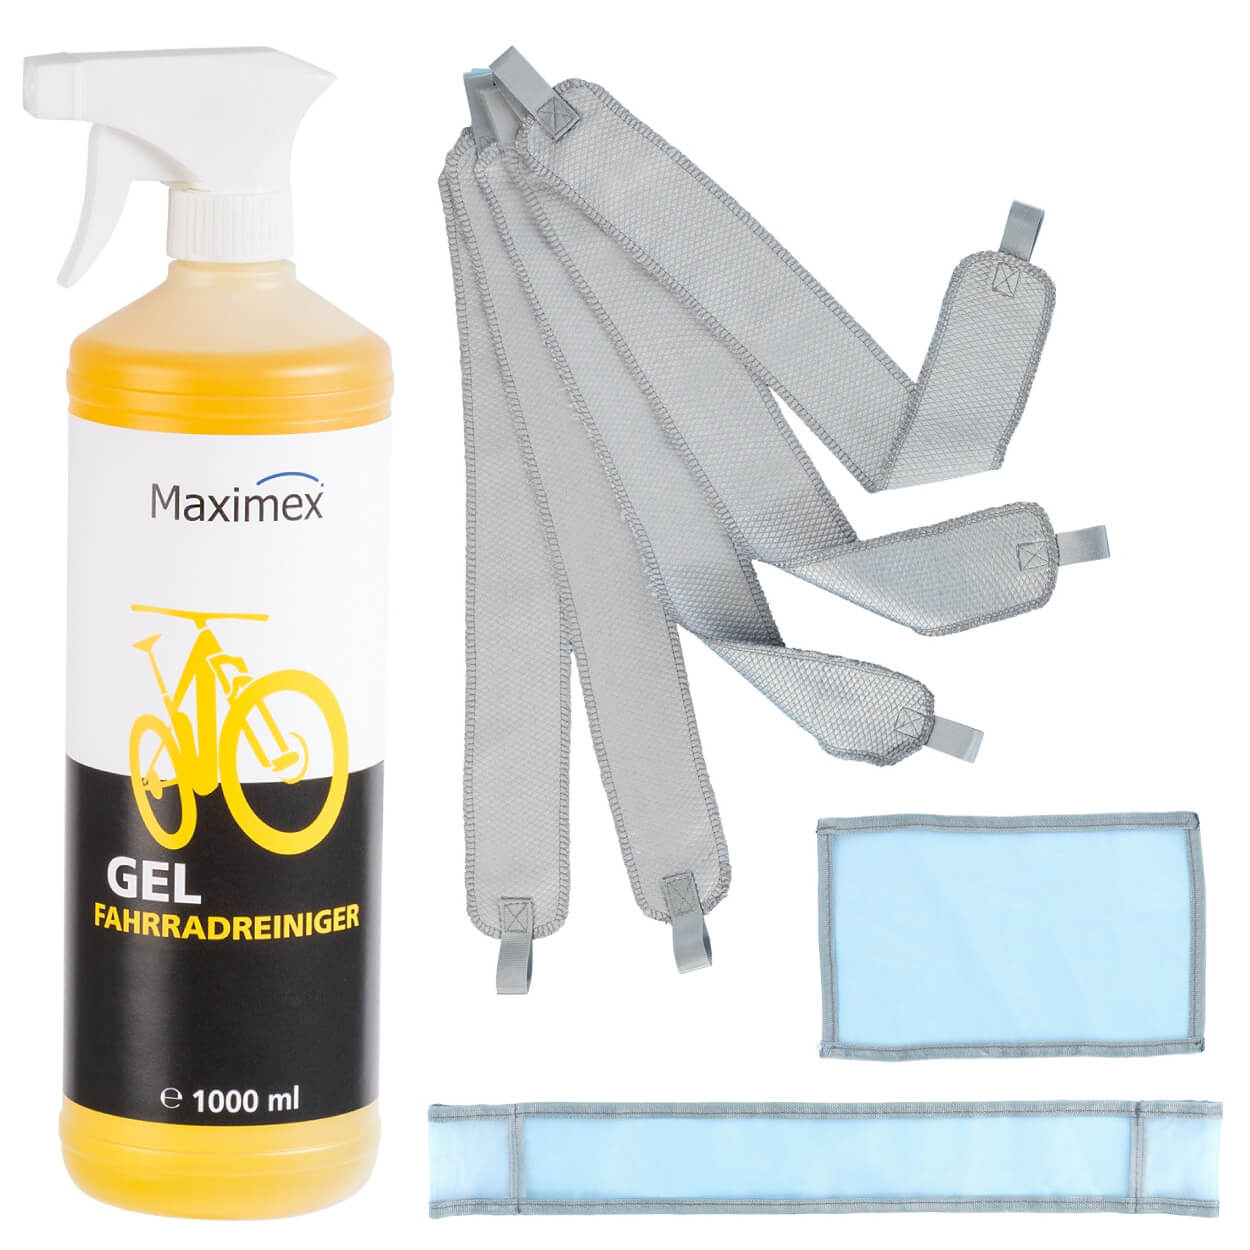 Fahrrad Reinigungsset mit Gel-Reiniger und Profi Reinigungsmitteln